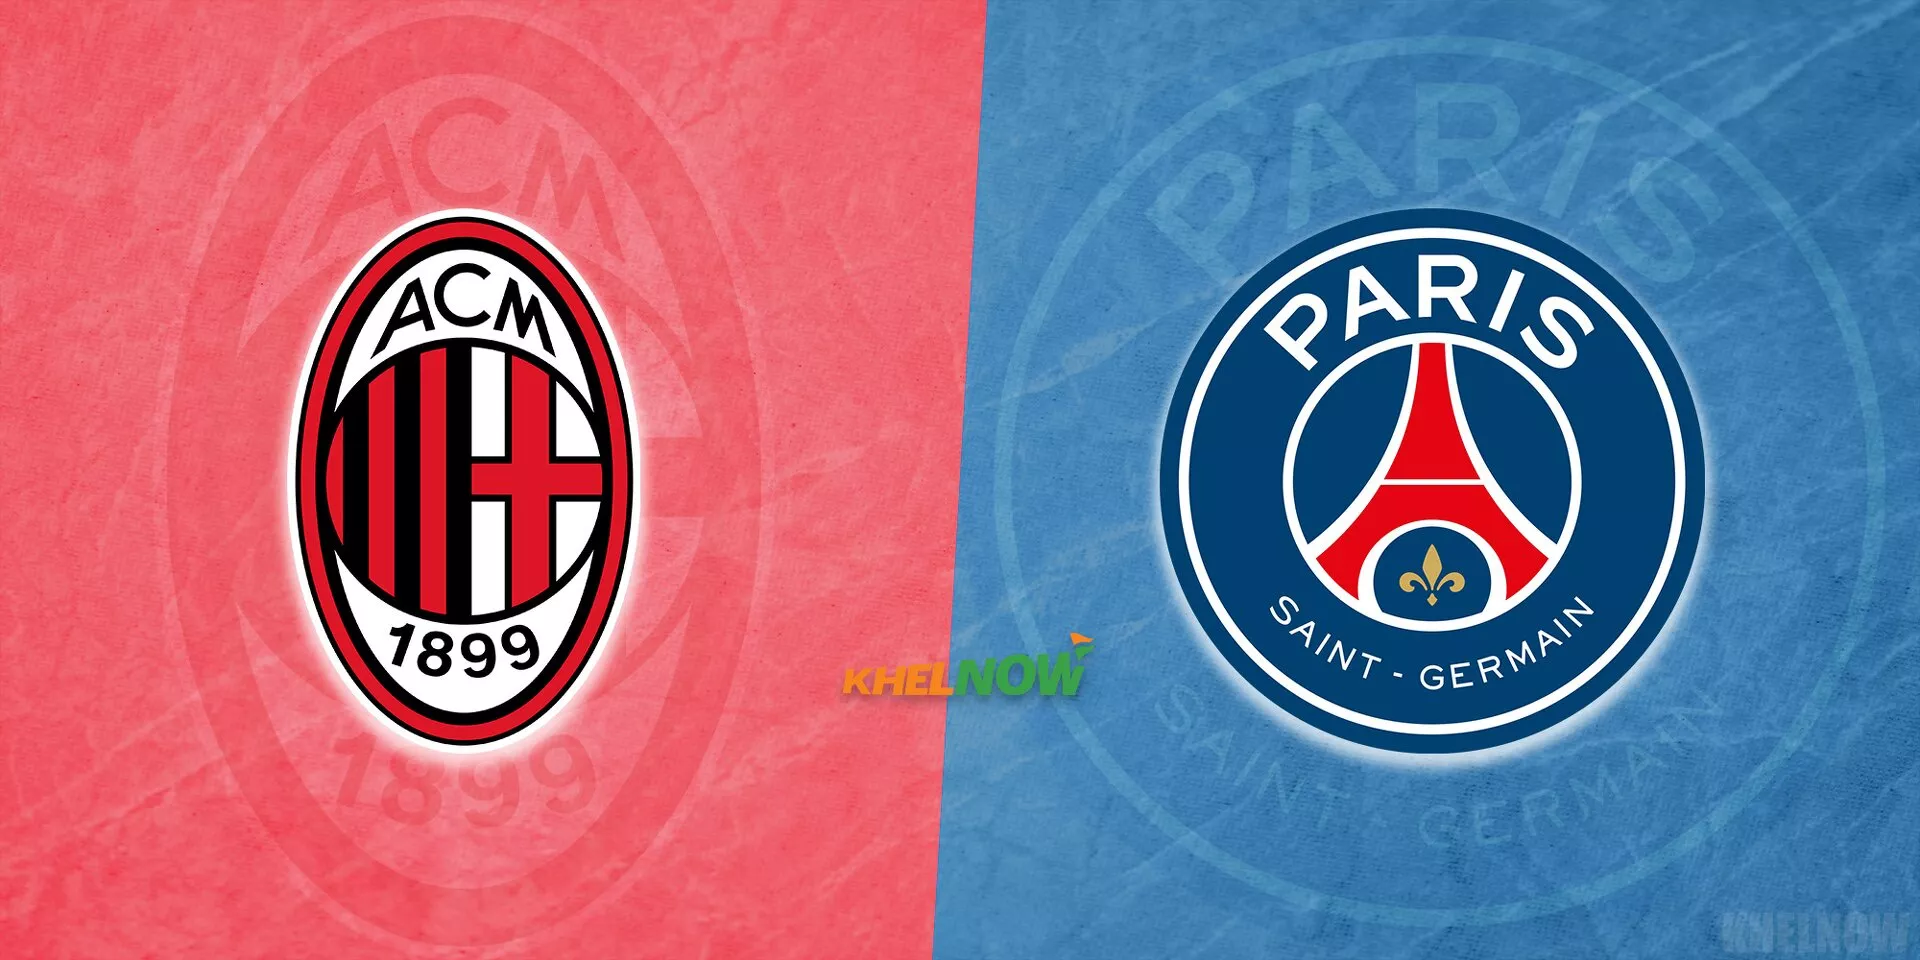 AC Milan vs PSG